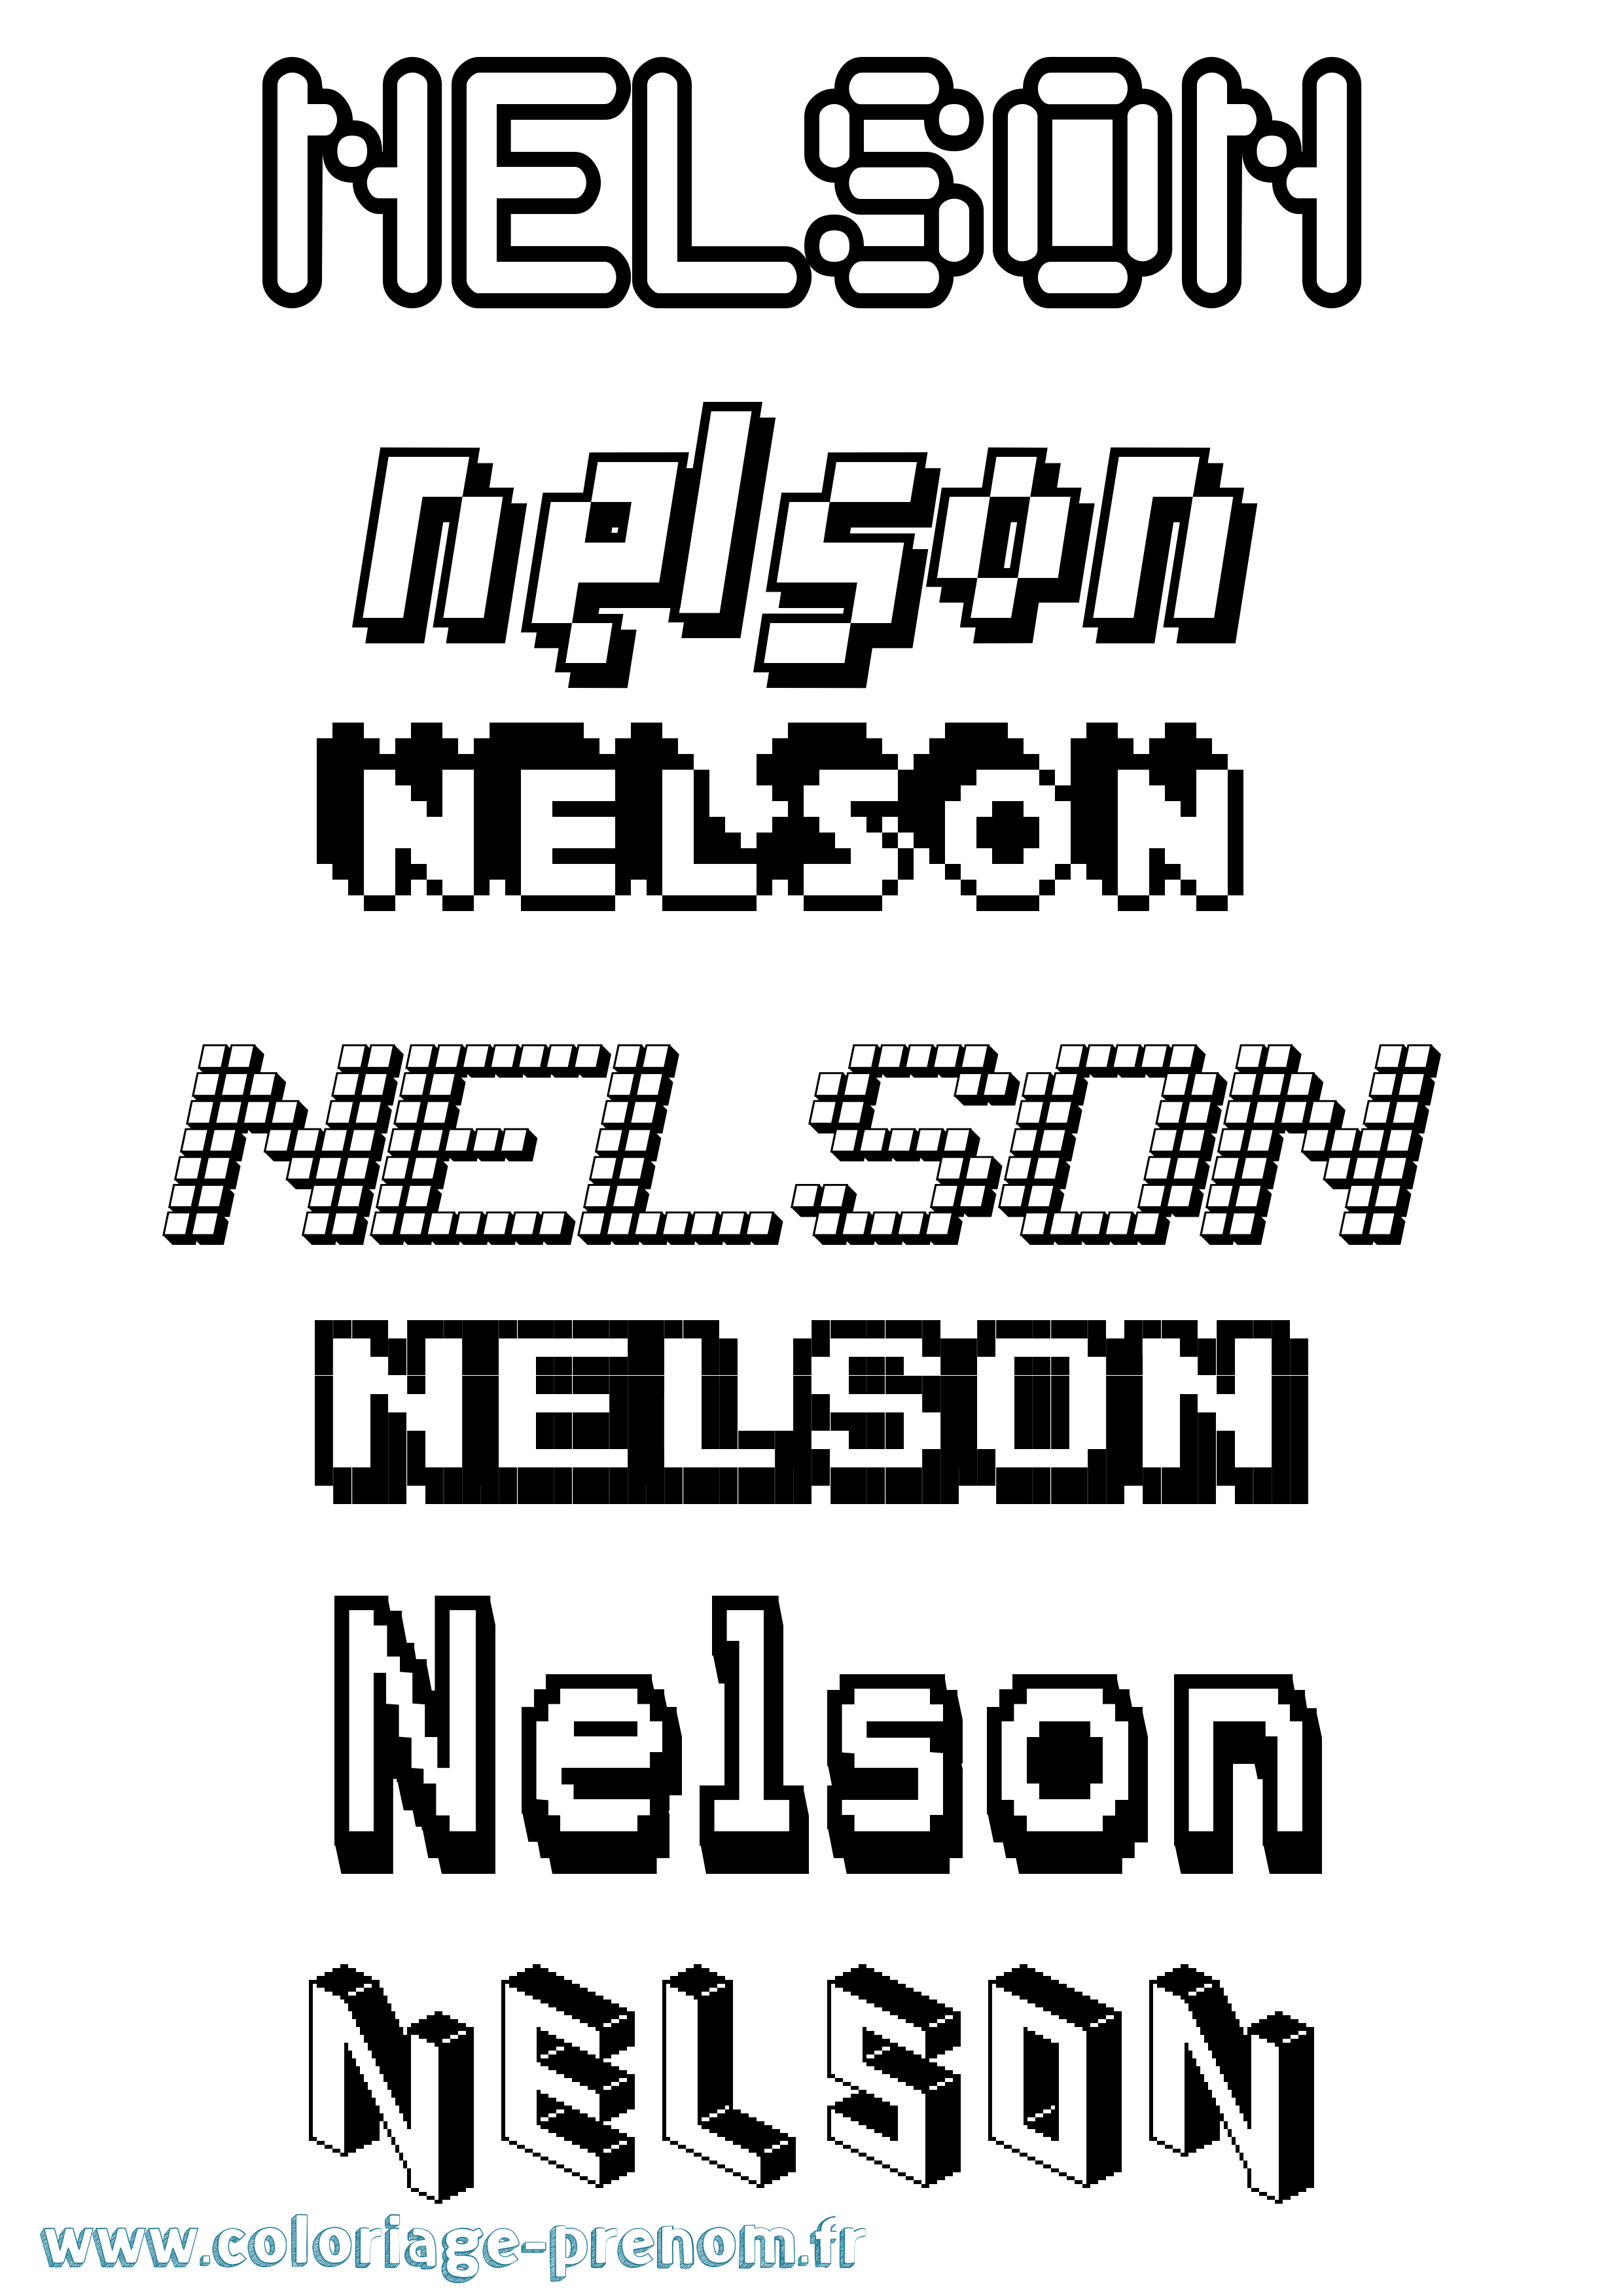 Coloriage prénom Nelson Pixel